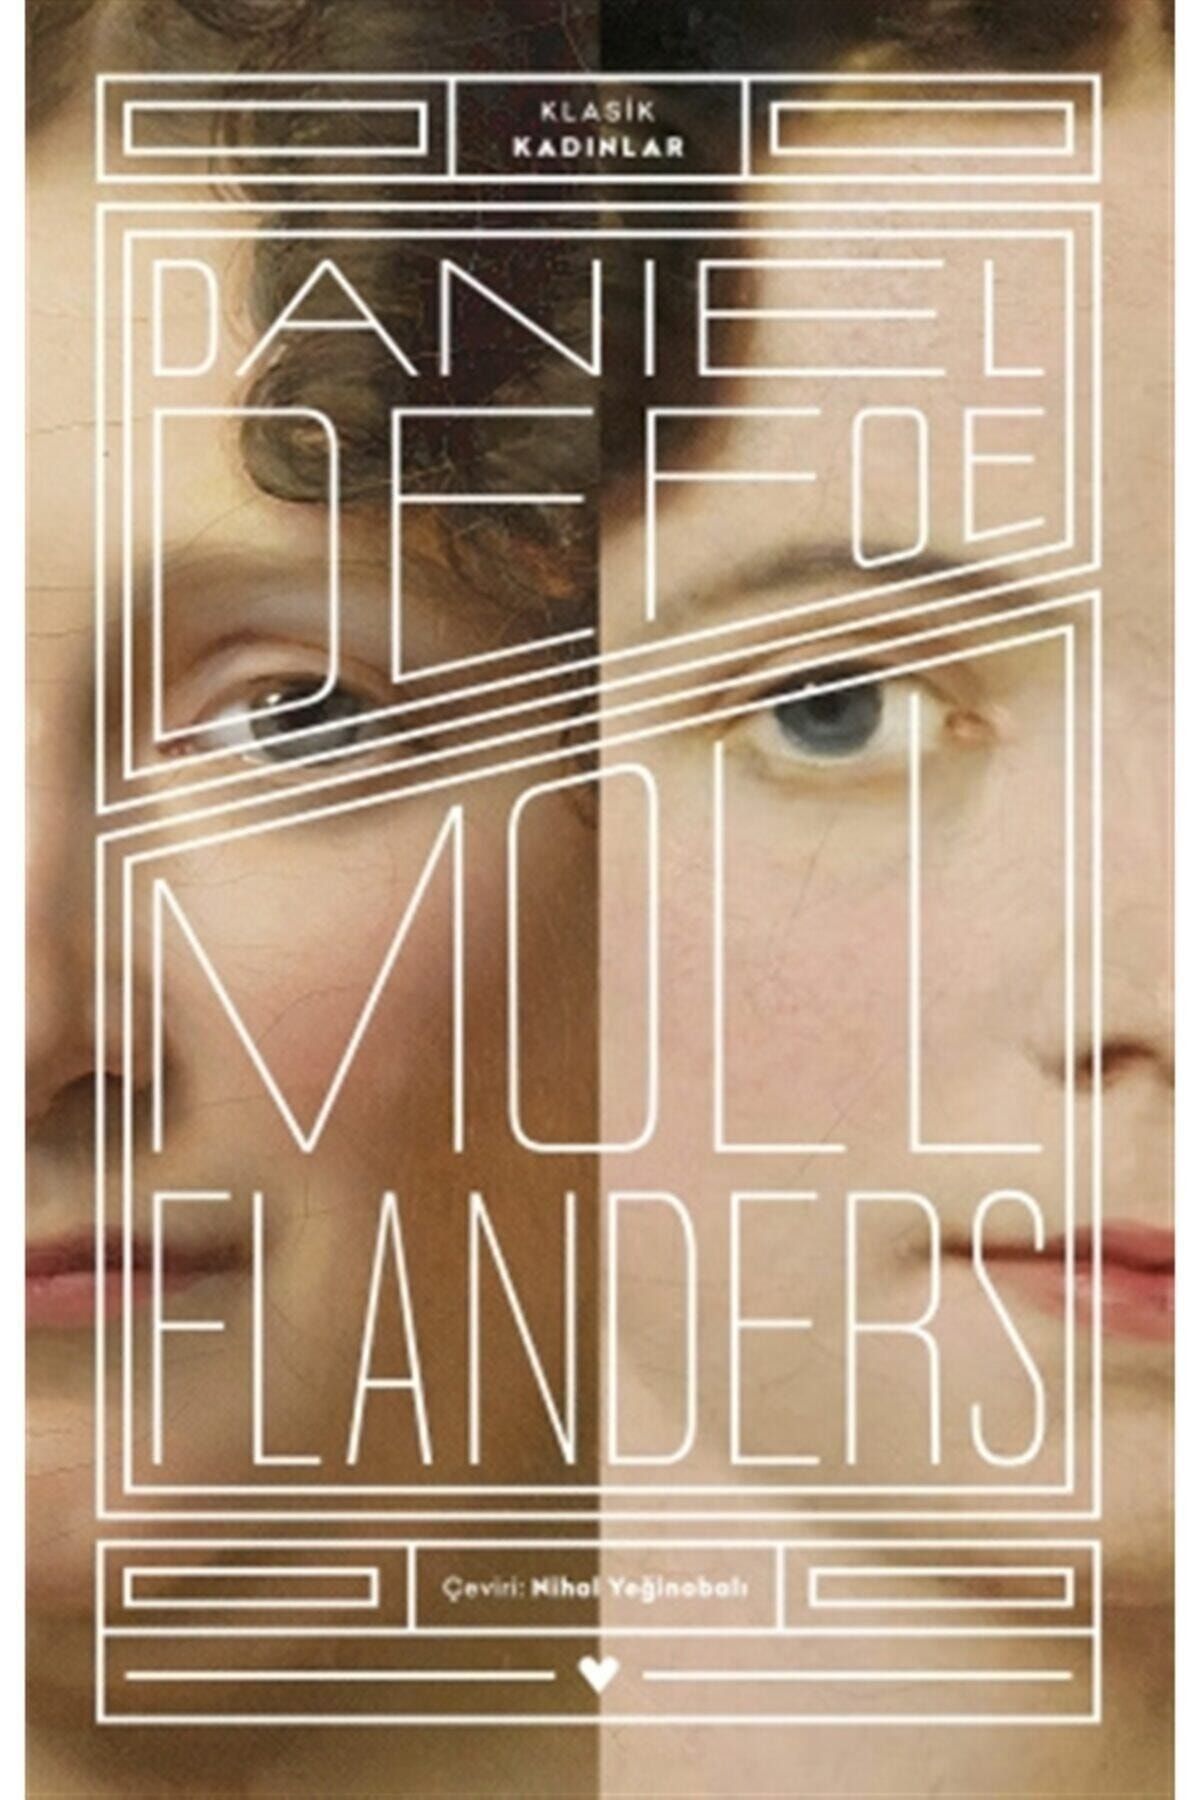 Can Sanat Yayınları Moll Flanders - Klasik Kadınlar- Daniel Defoe